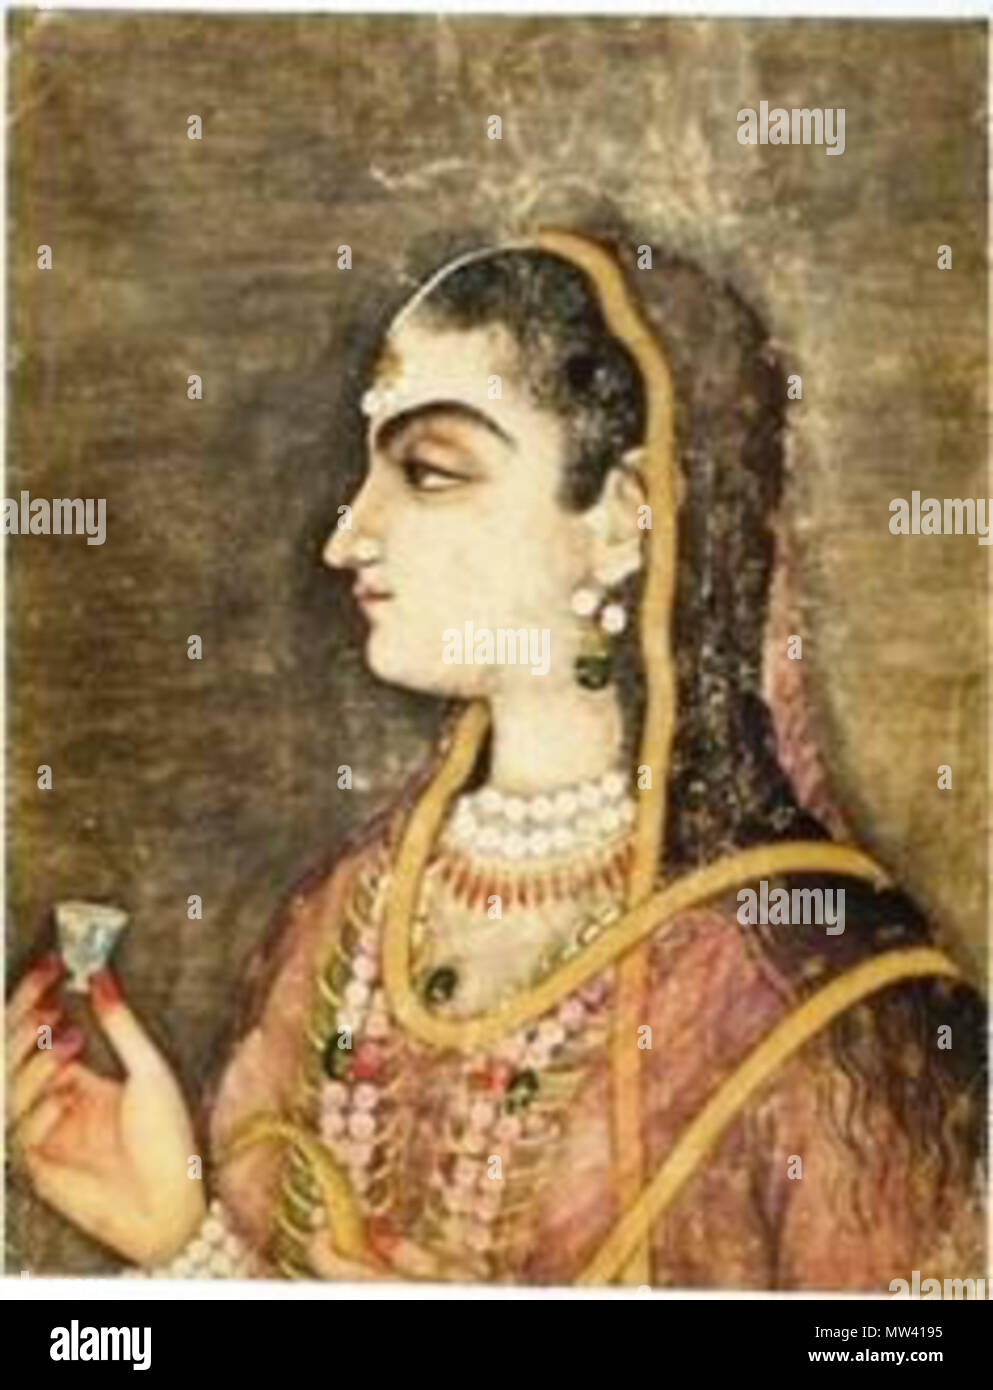 . Inglese: Jahanzeb 'Jani' Banu iniziata (d. 1705) era una principessa Mughal come la figlia del principe ereditario Dara Shikoh e la sua consorte Nadira Banu iniziata. Affettuosamente noto come Jani iniziata, anche lei era la nipote dell'imperatore Shah Jahan e Imperatrice Mumtaz Mahal. Lo scrittore italiano e viaggiatore, Niccolao Manucci, che hanno lavorato sotto il suo padre, descritto come il suo essere bello e coraggioso. In 1669, ha sposato il suo primo cugino, Principe Azam Shah, l'apparente erede imperatore Aurangzeb che brevemente divenne imperatore Mughal nel 1707. Il 30 aprile 2010, 16:37:01. Sconosciuto 305 Jahanzeb Banu iniziata Foto Stock